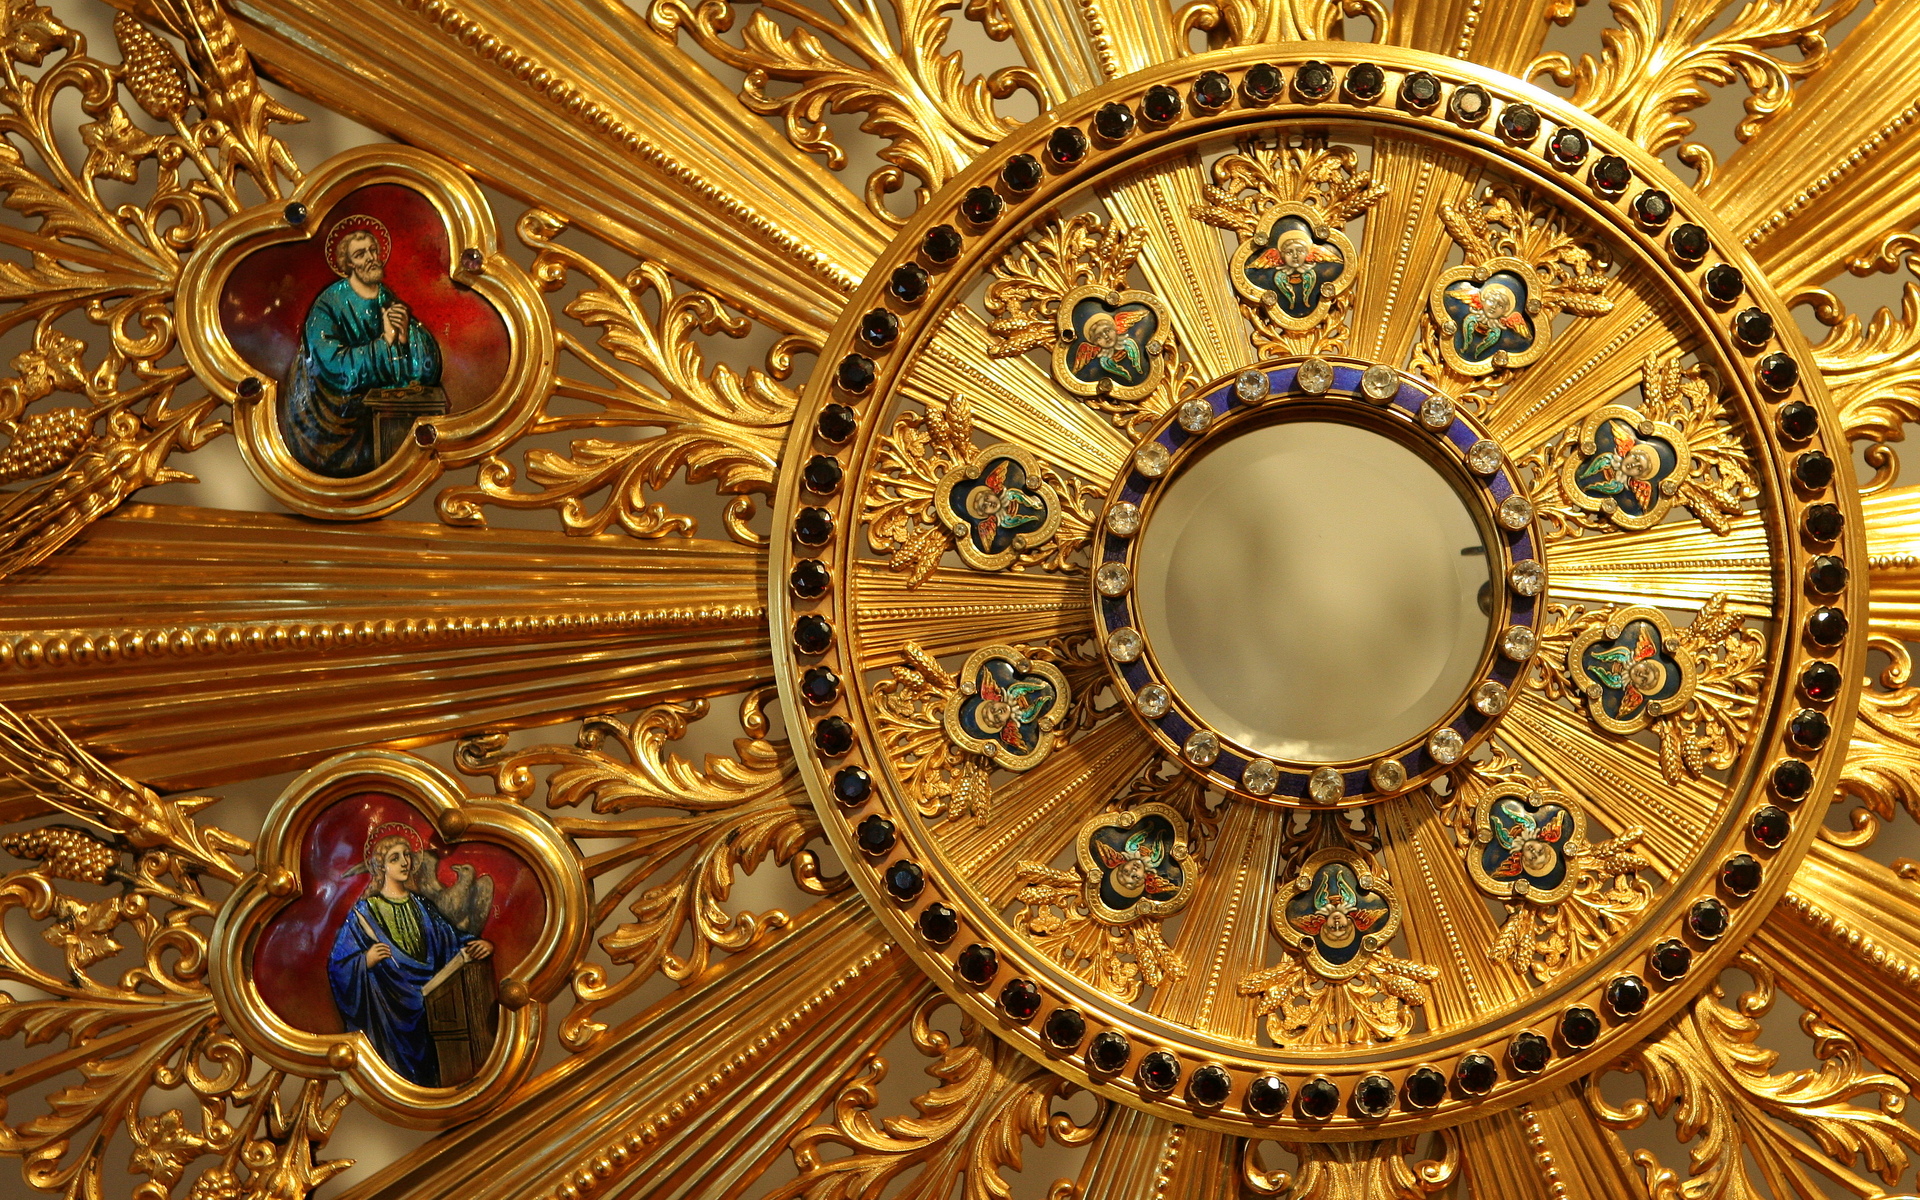 katholische tapete hd,decke,gold,metall,die architektur,stockfotografie